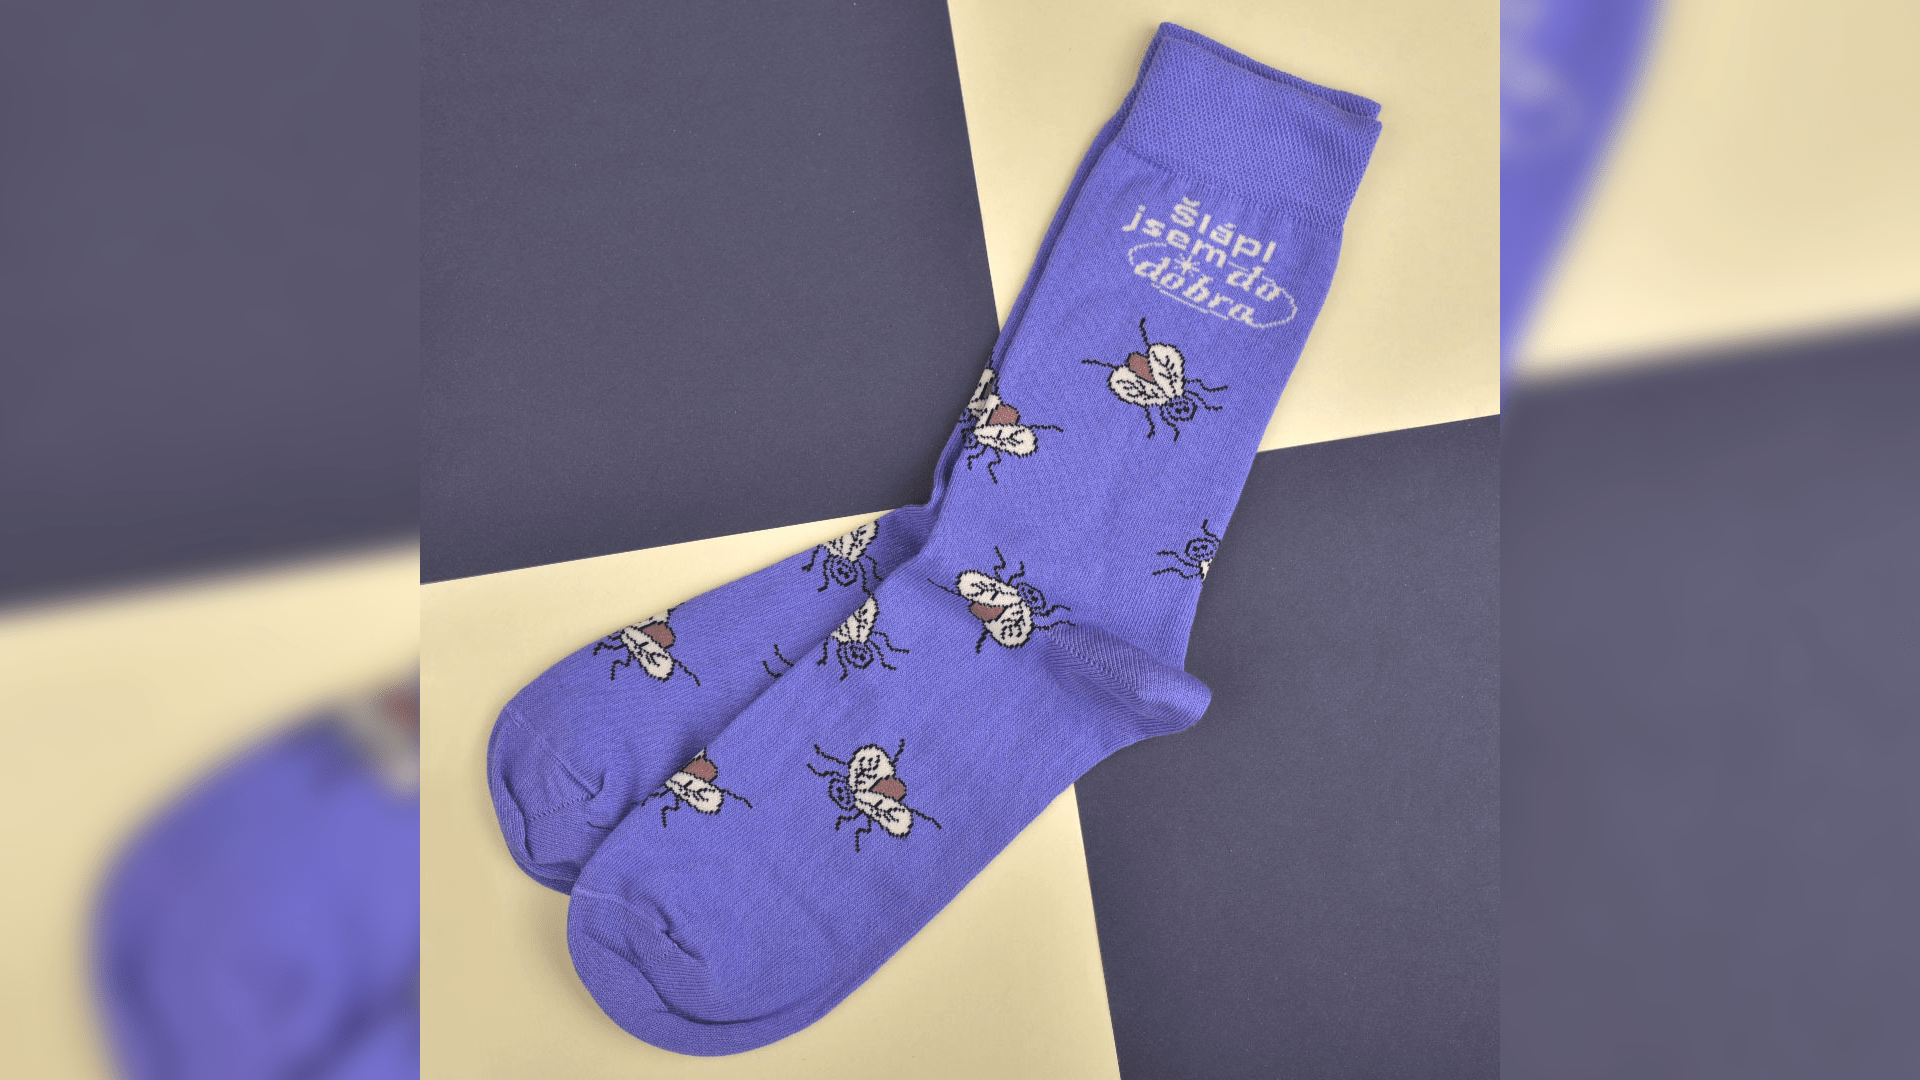 Podpořte charitativní projekt Pomožky a pořiďte k Vánocům nejen blízkým ponožky, které pomáhají.